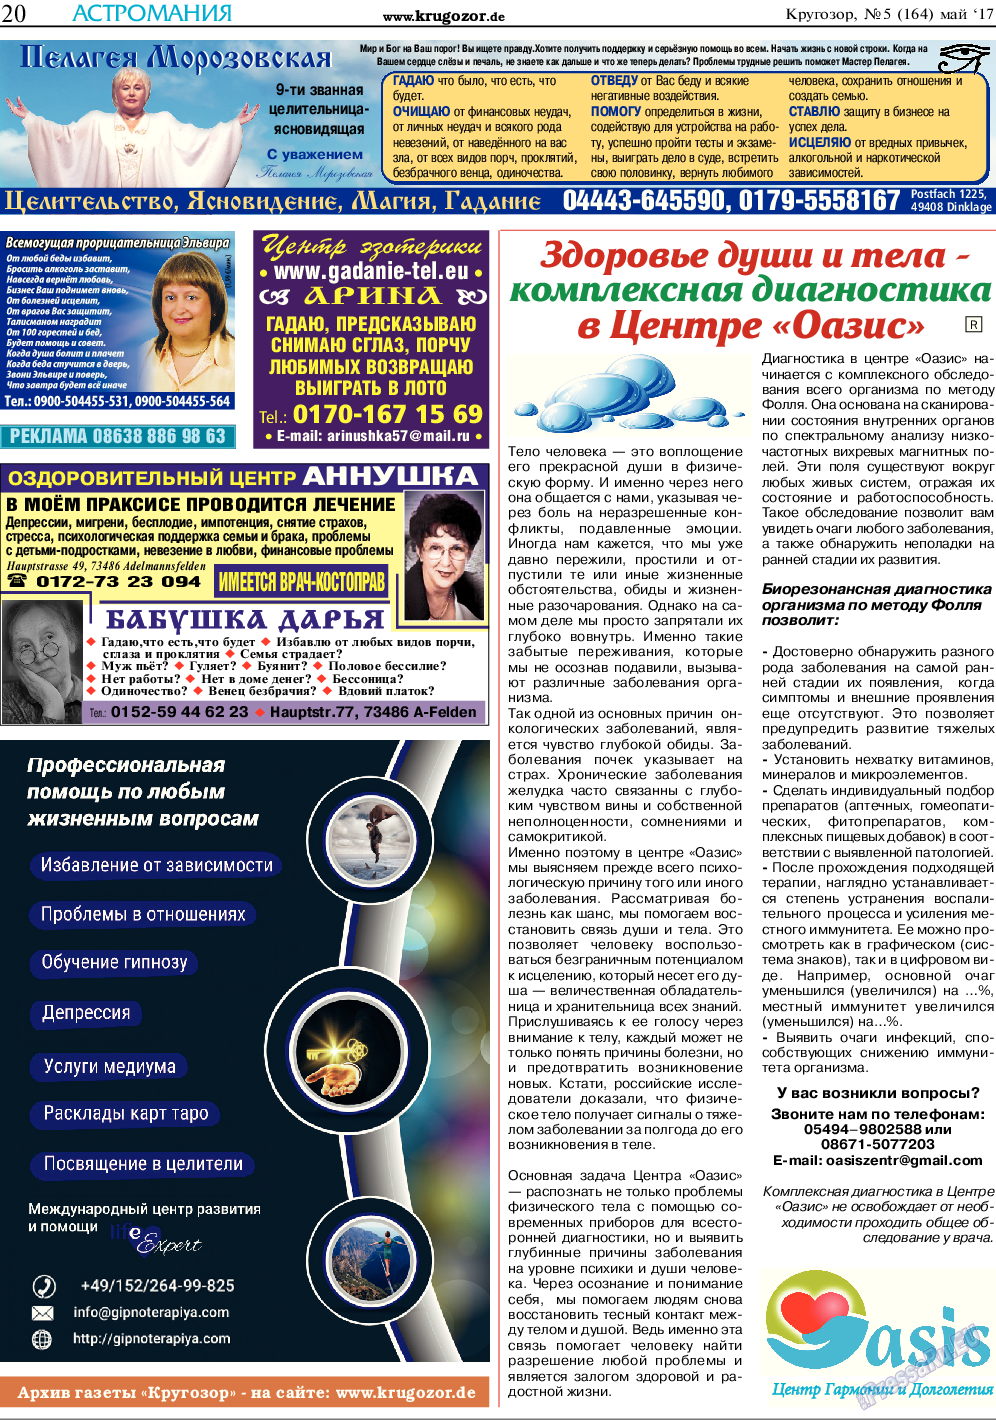 Кругозор, газета. 2017 №5 стр.20